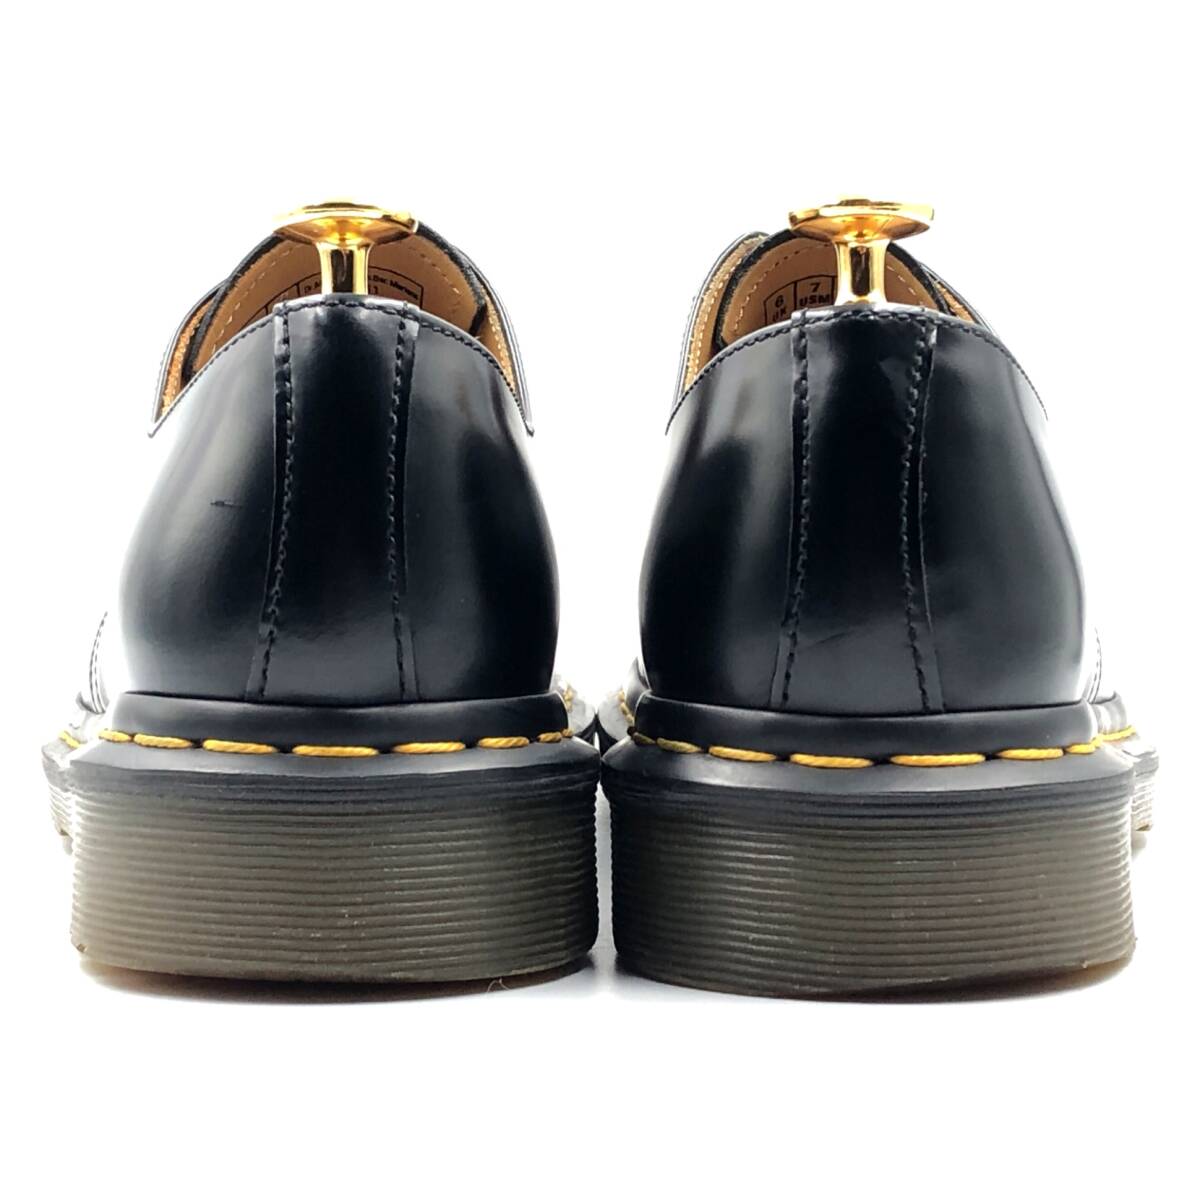  prompt decision Dr.Martens Dr. Martens 24cm UK6 US7 1461 men's leather shoes 3 hole plain tu black black leather shoes leather shoes business 